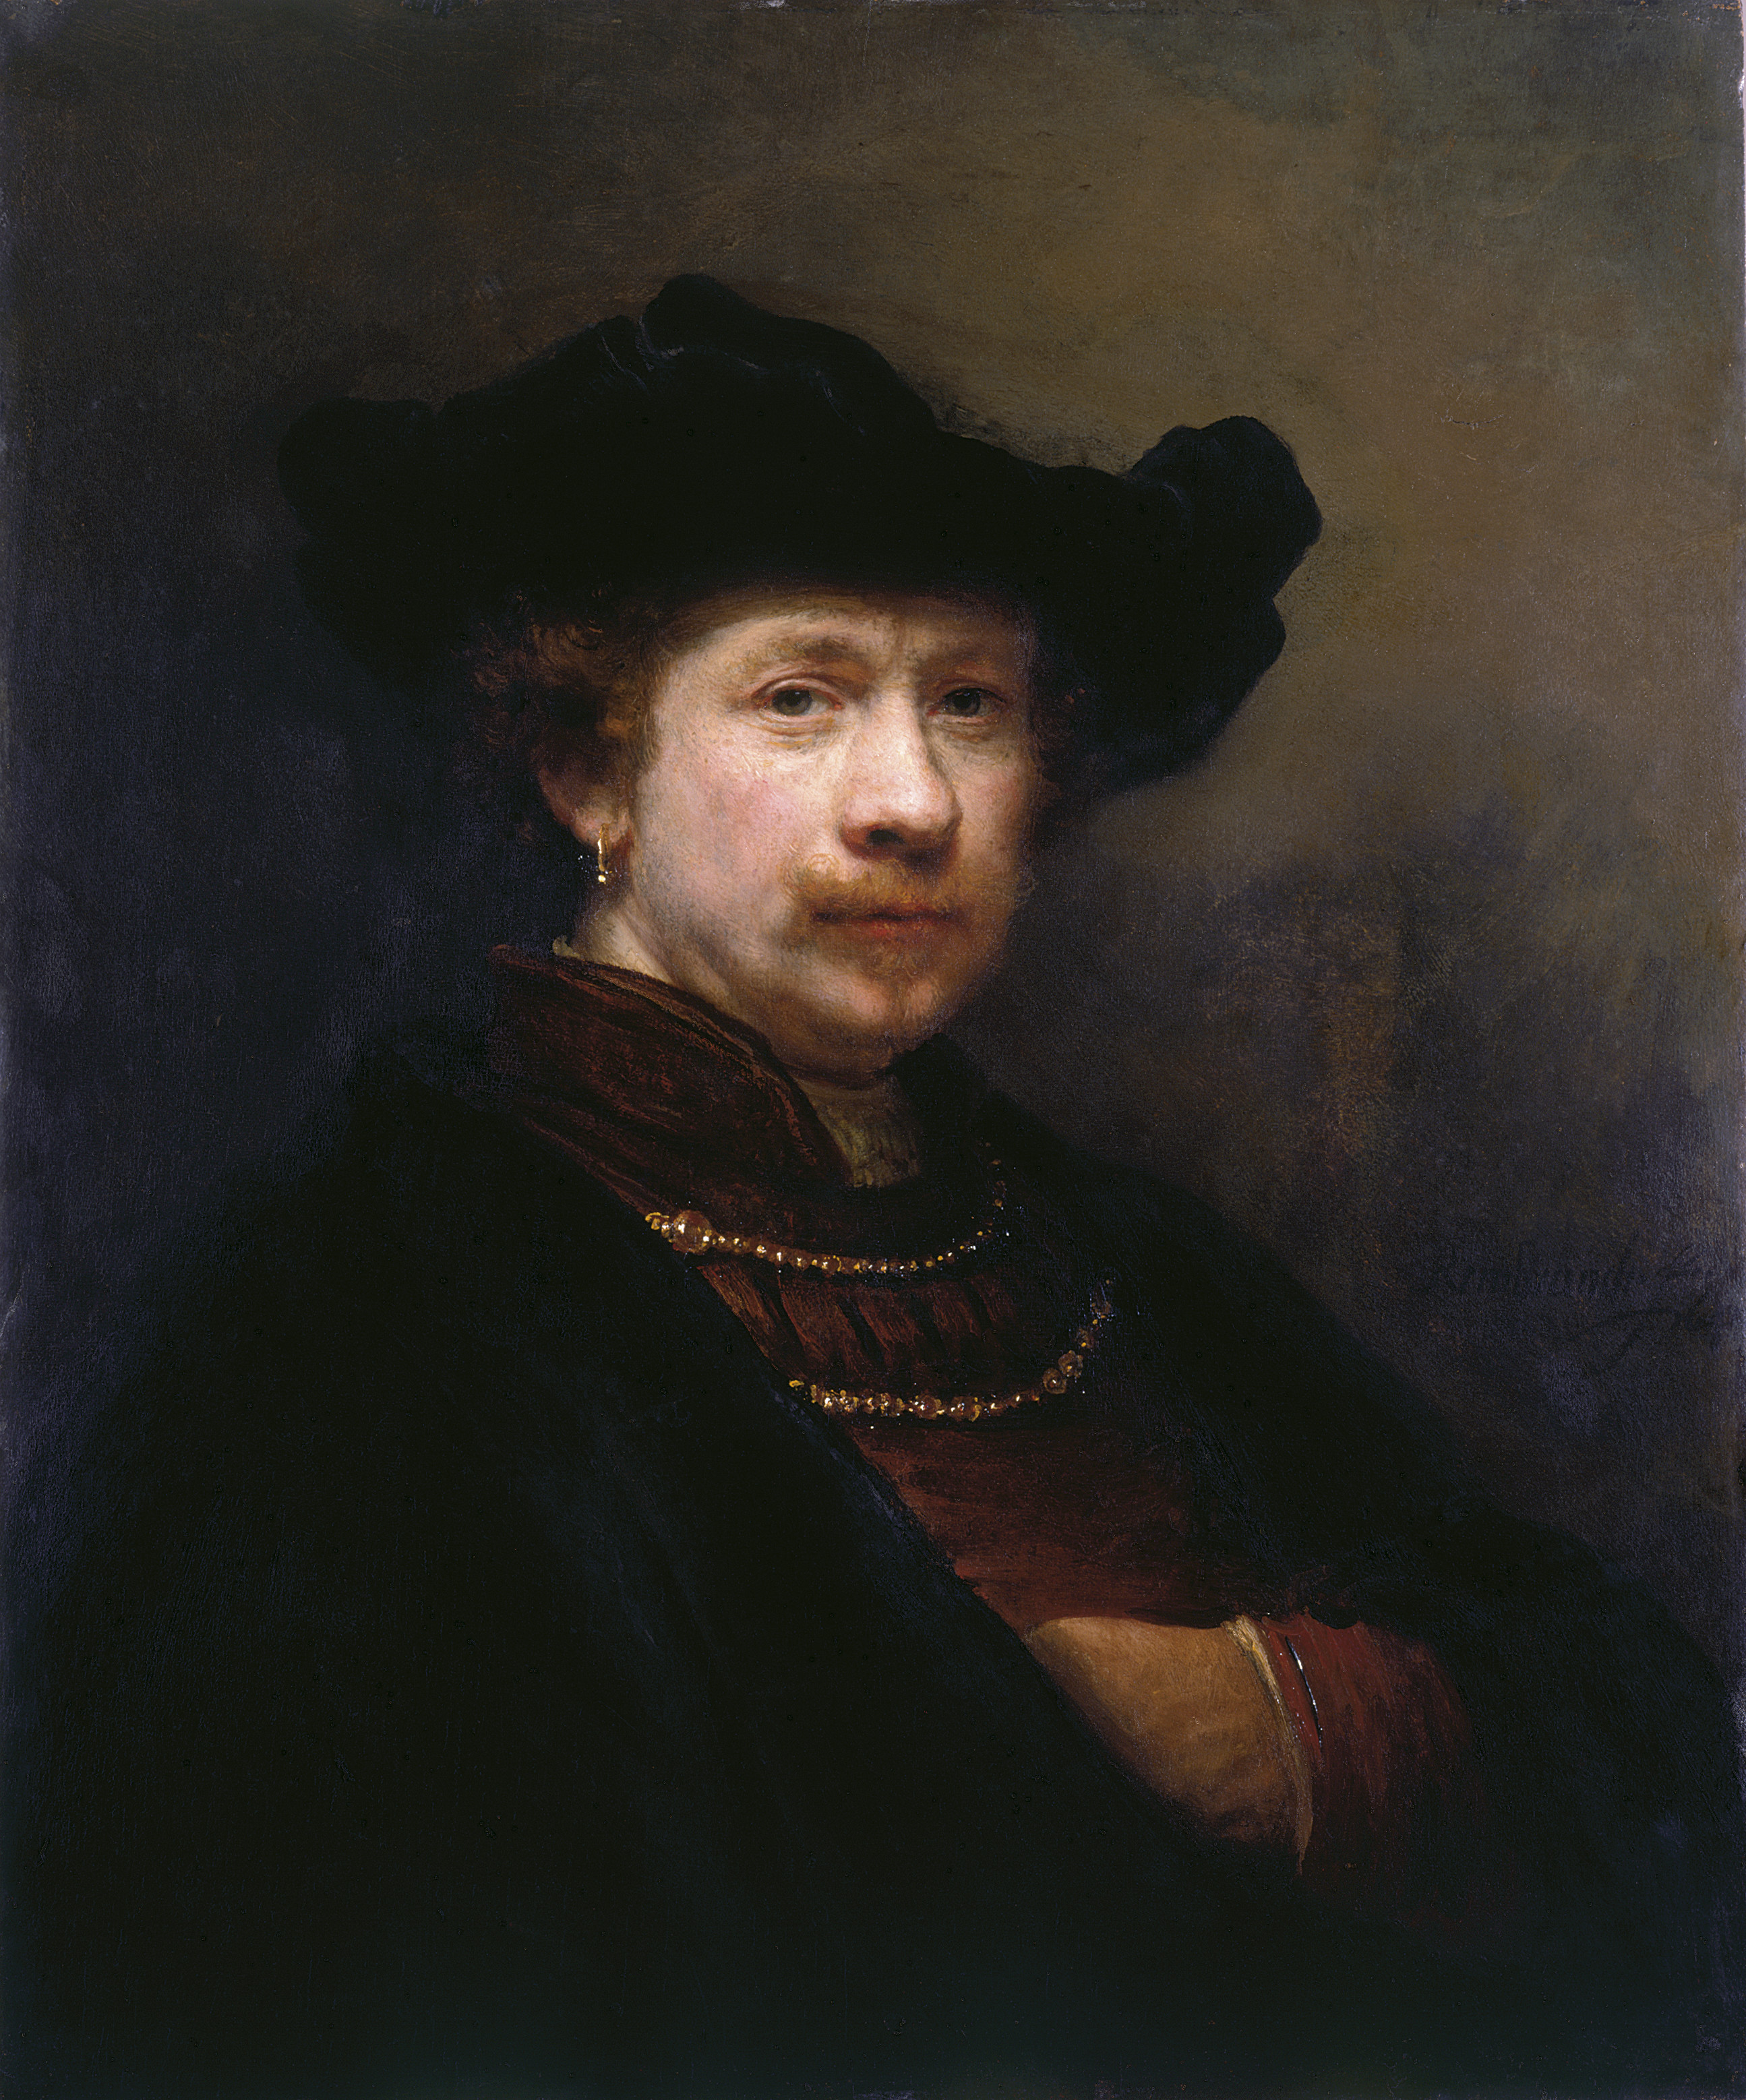 خودنگاره کلاه لبه دار by Rembrandt van Rijn - 1642 